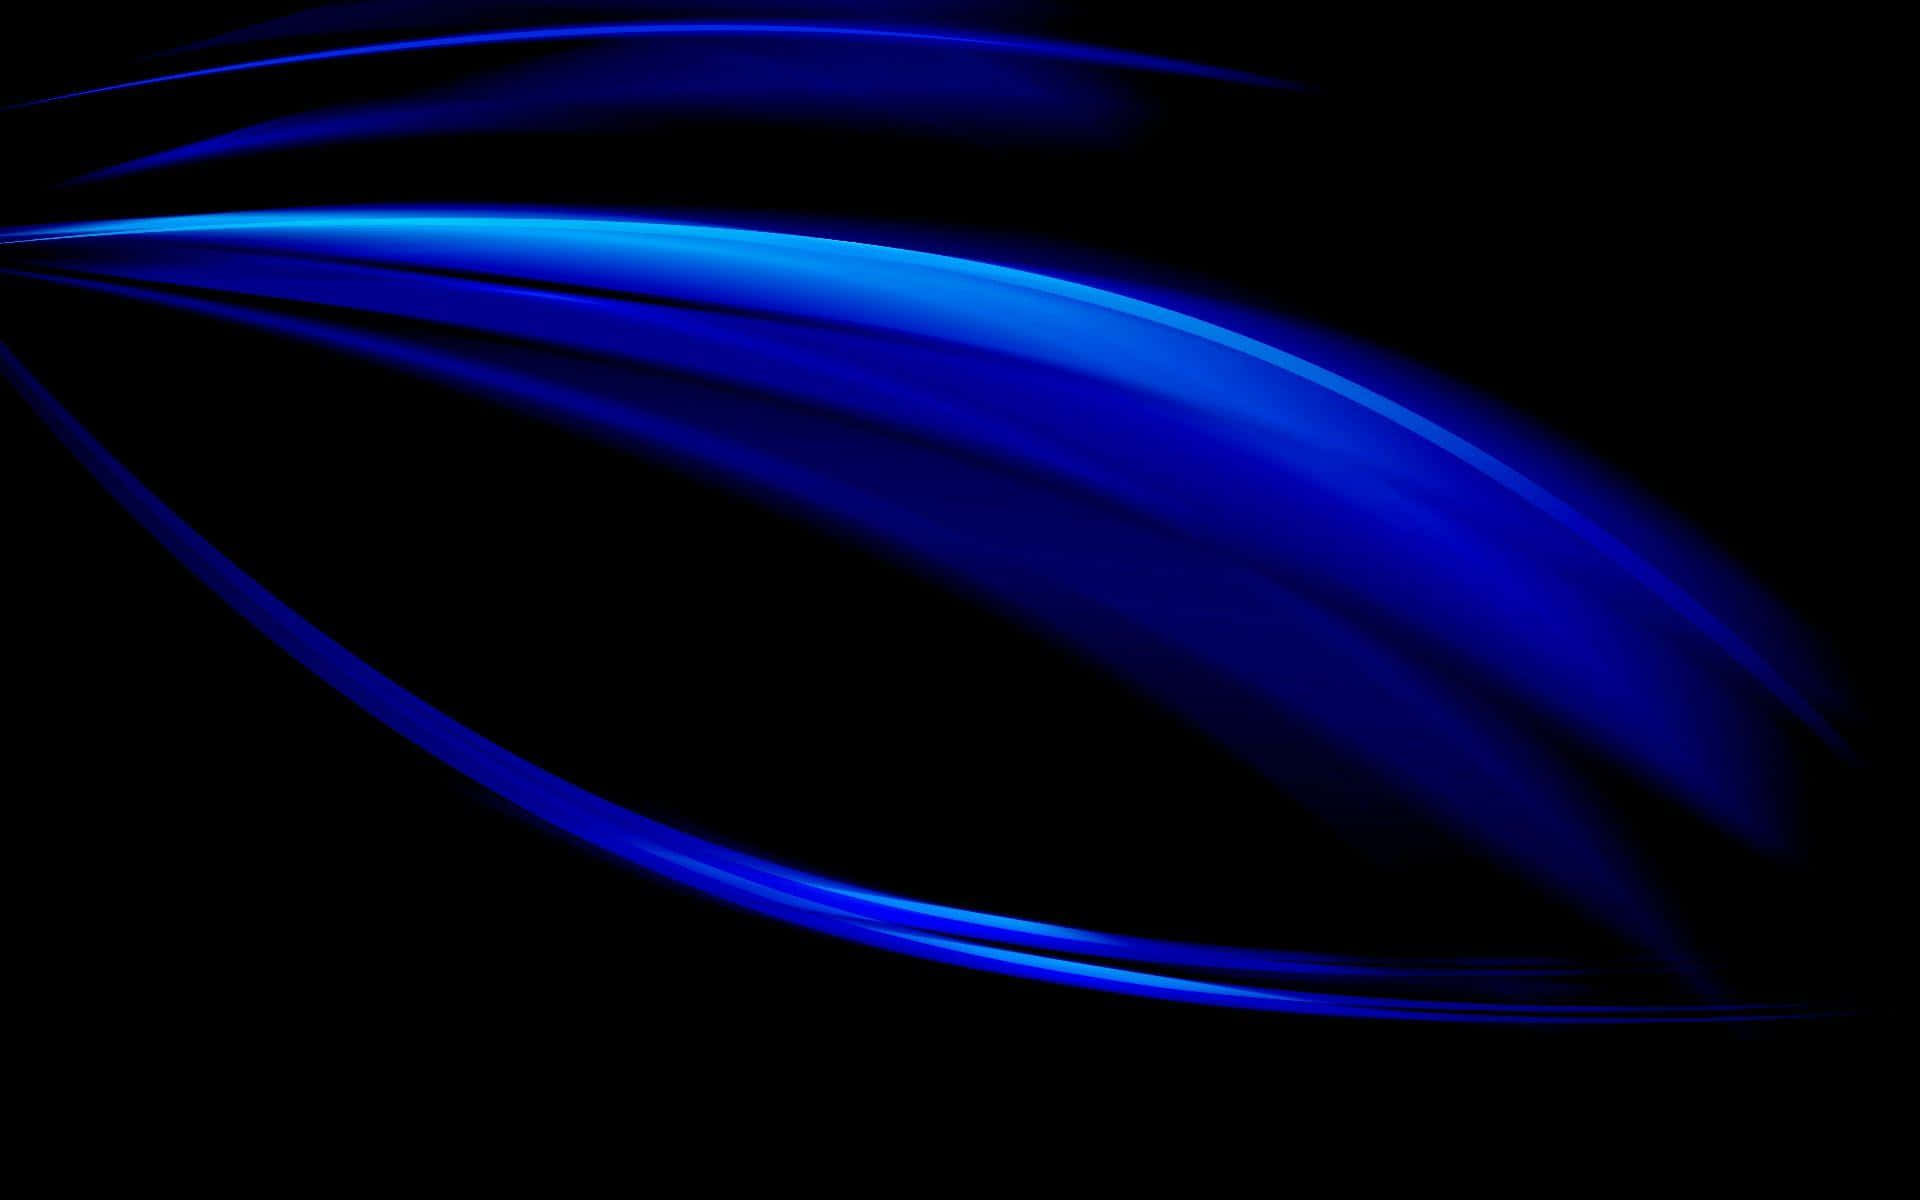 Royal Blue And Black Background Waves Digital Artwork Background